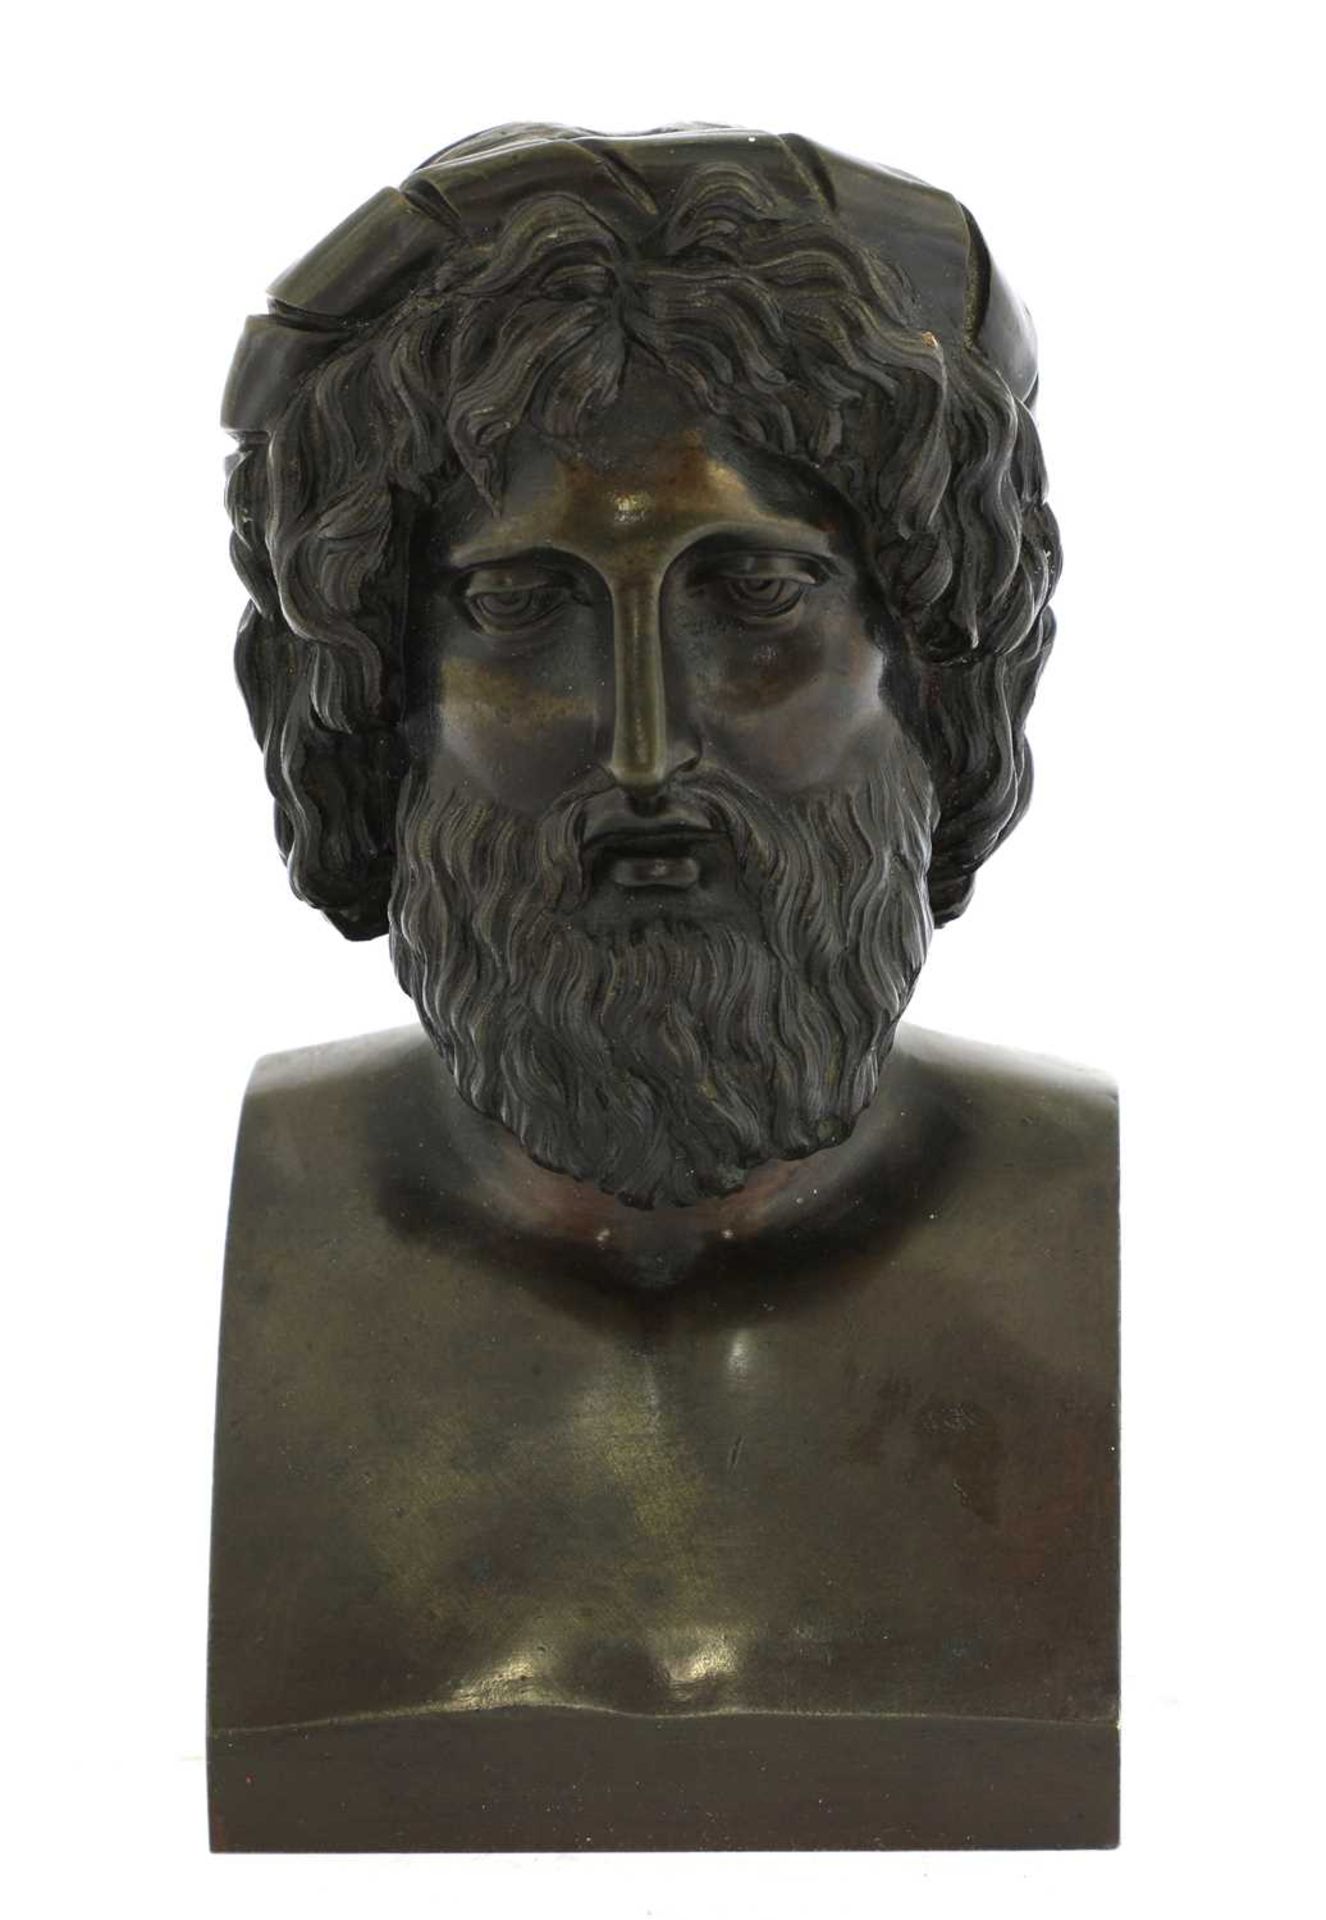 A Grand Tour bronze bust,